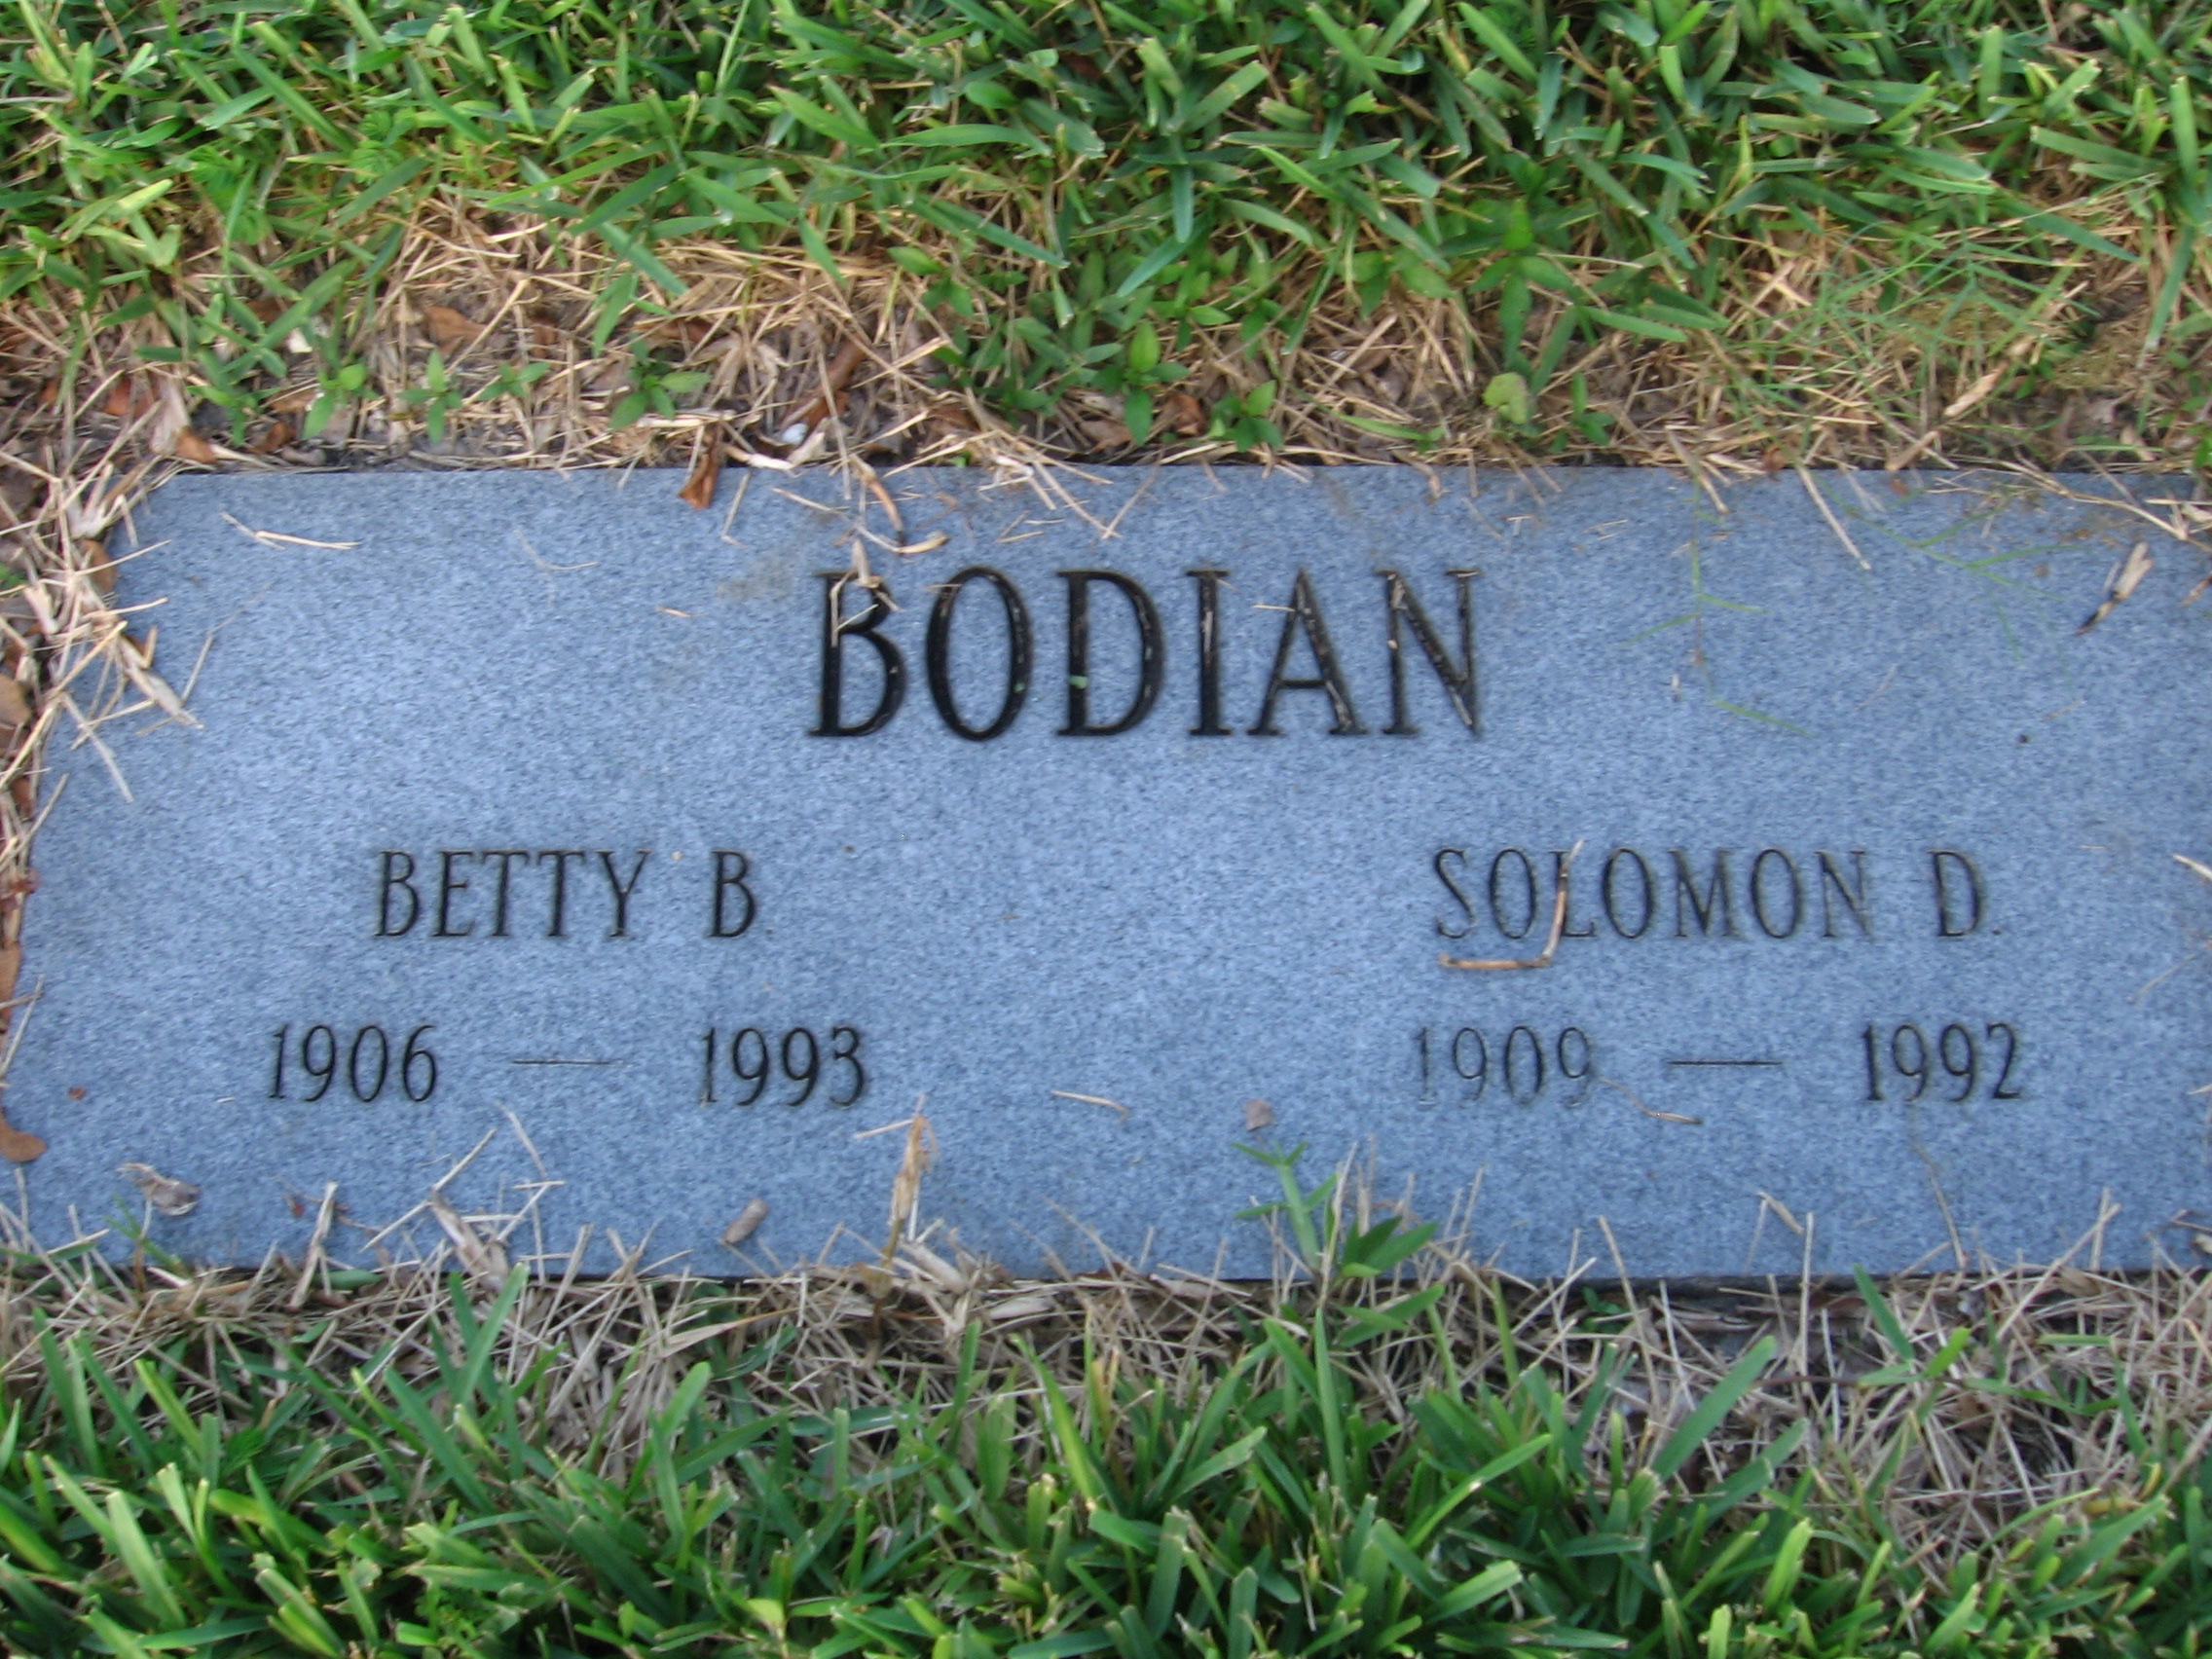 Betty B Bodian